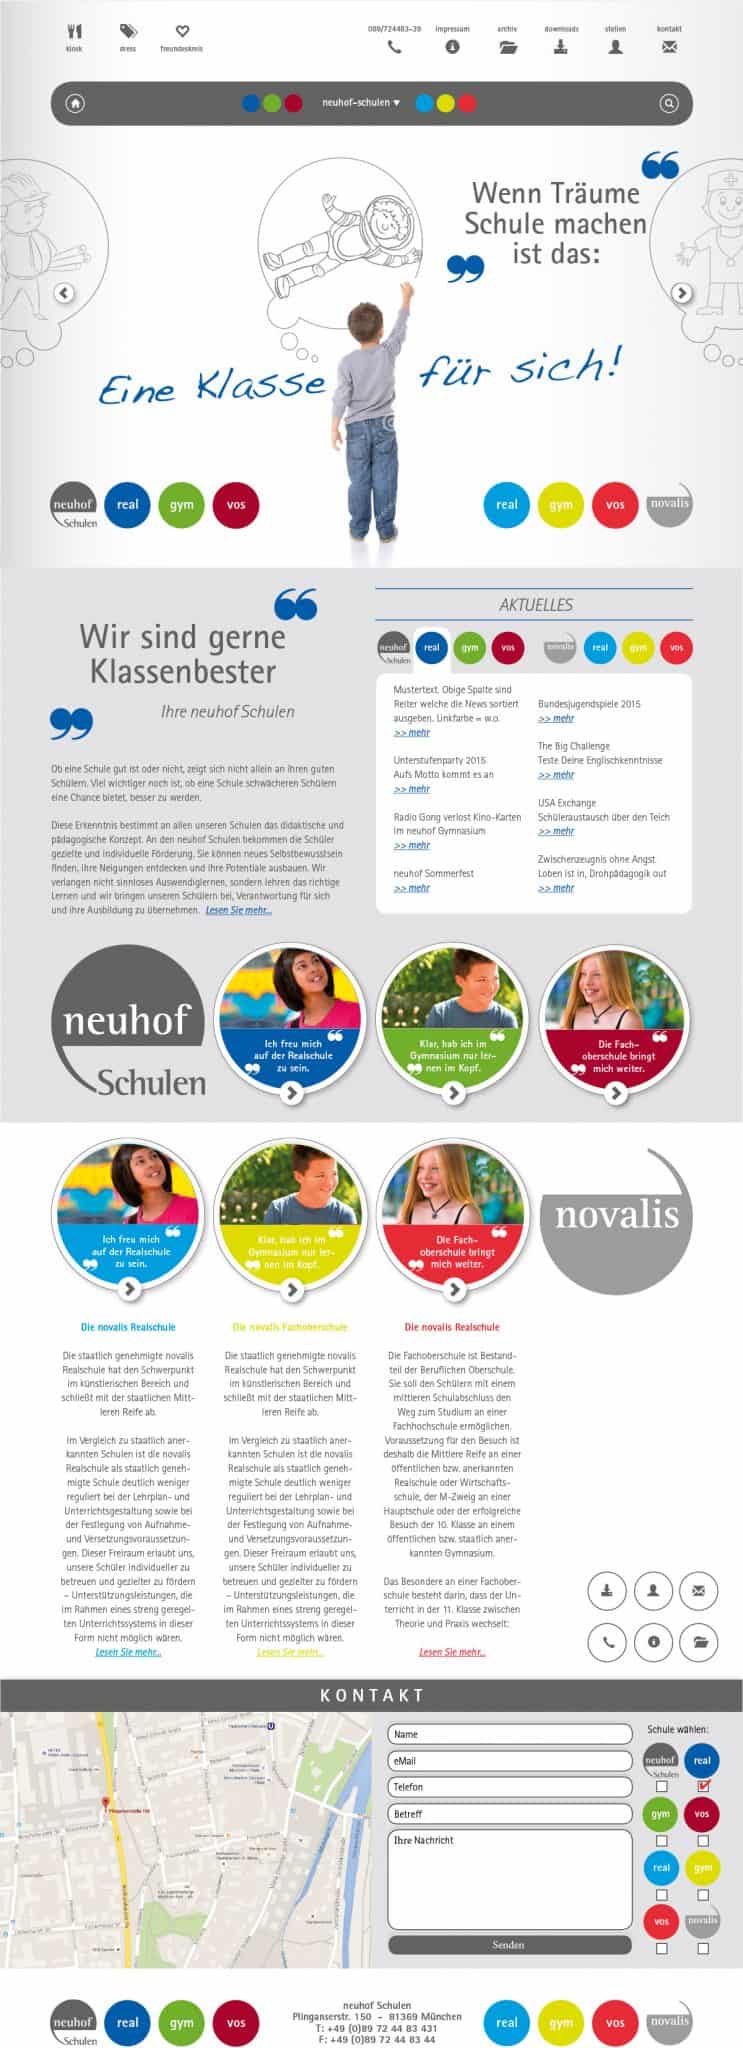 WordPress Webdesign Konzept für Münchner Neuhof Schule